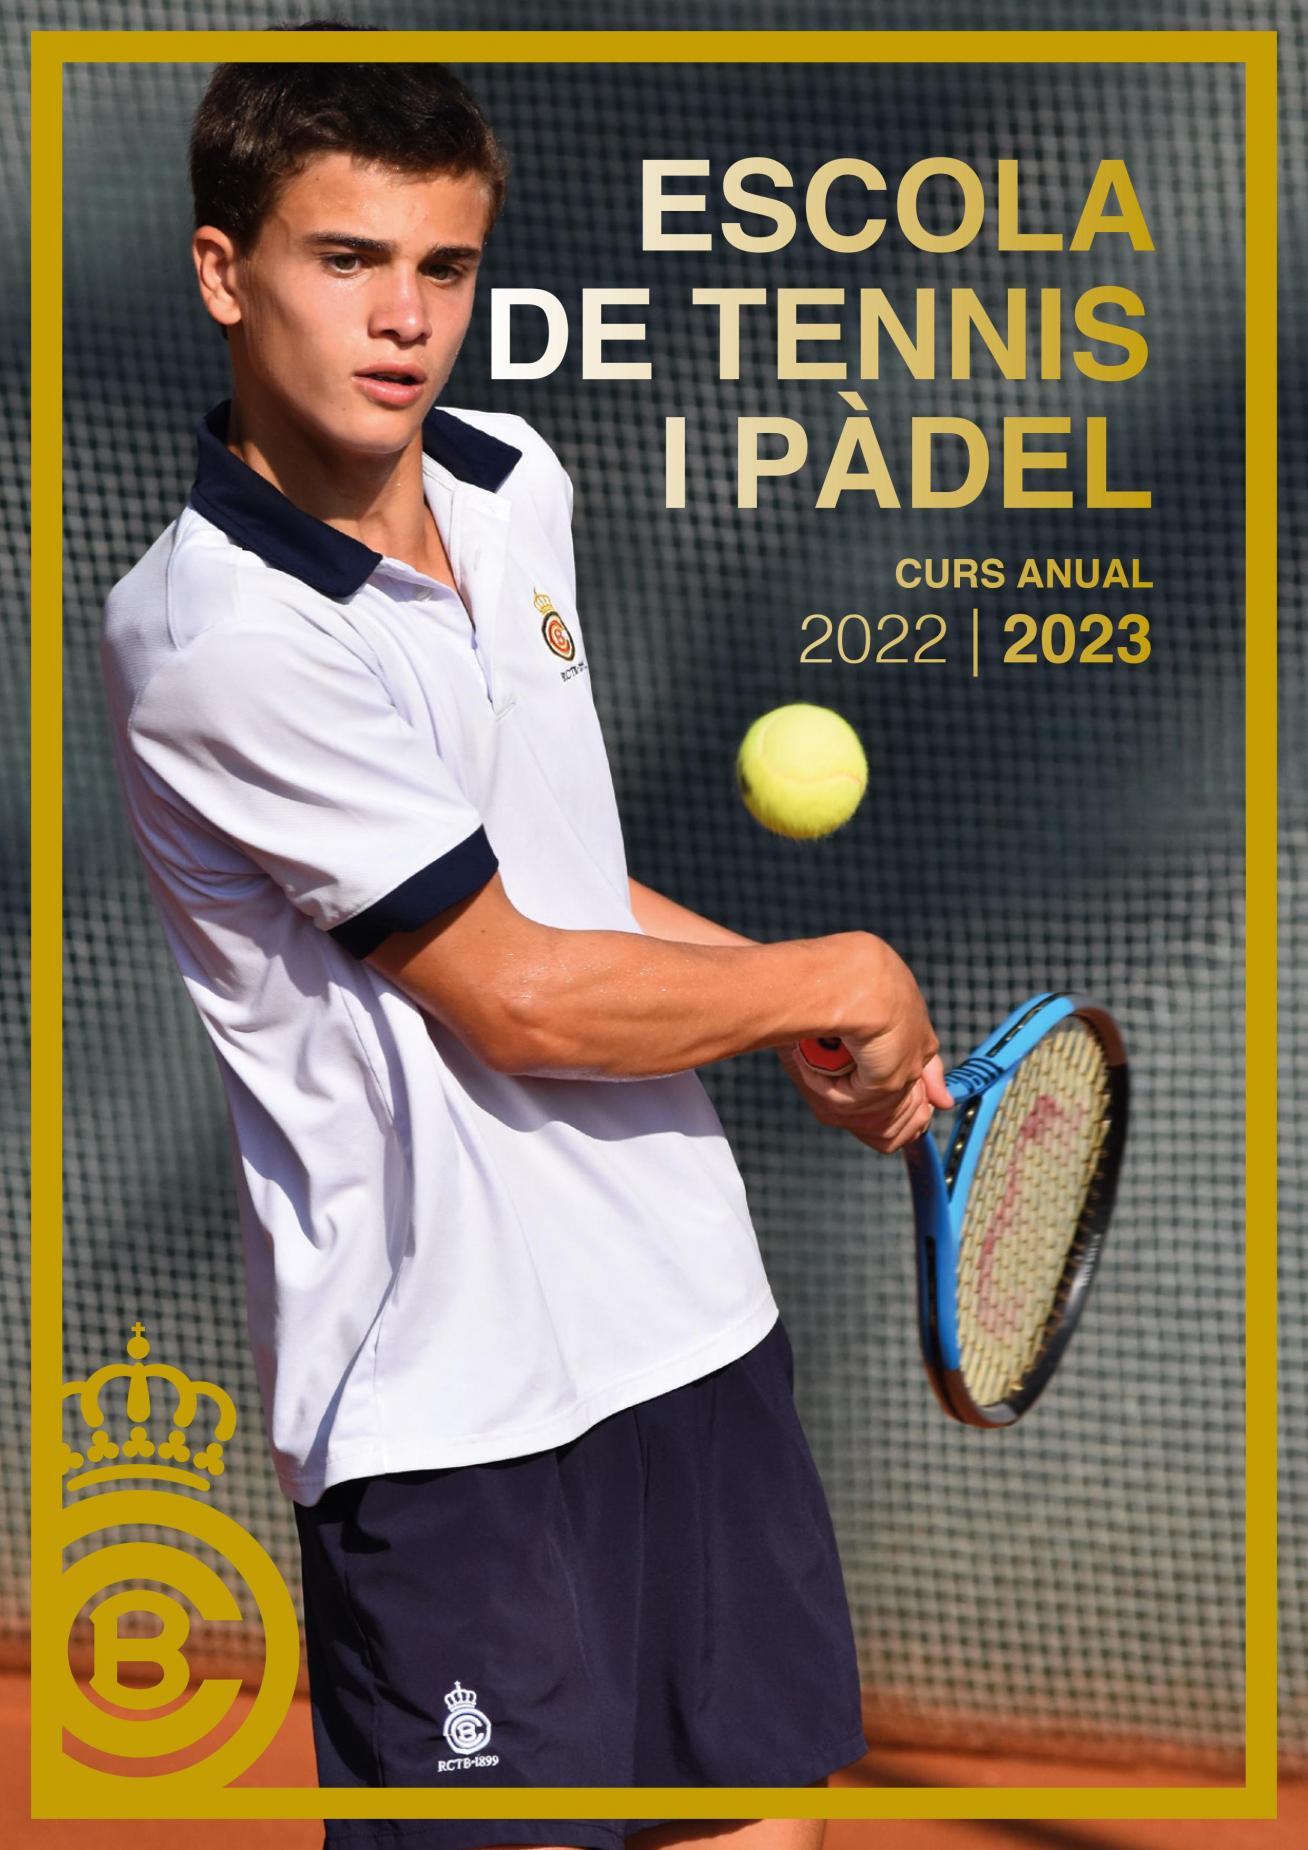 Curs anual de l'Escola de Tennis i Pàdel 2022/23